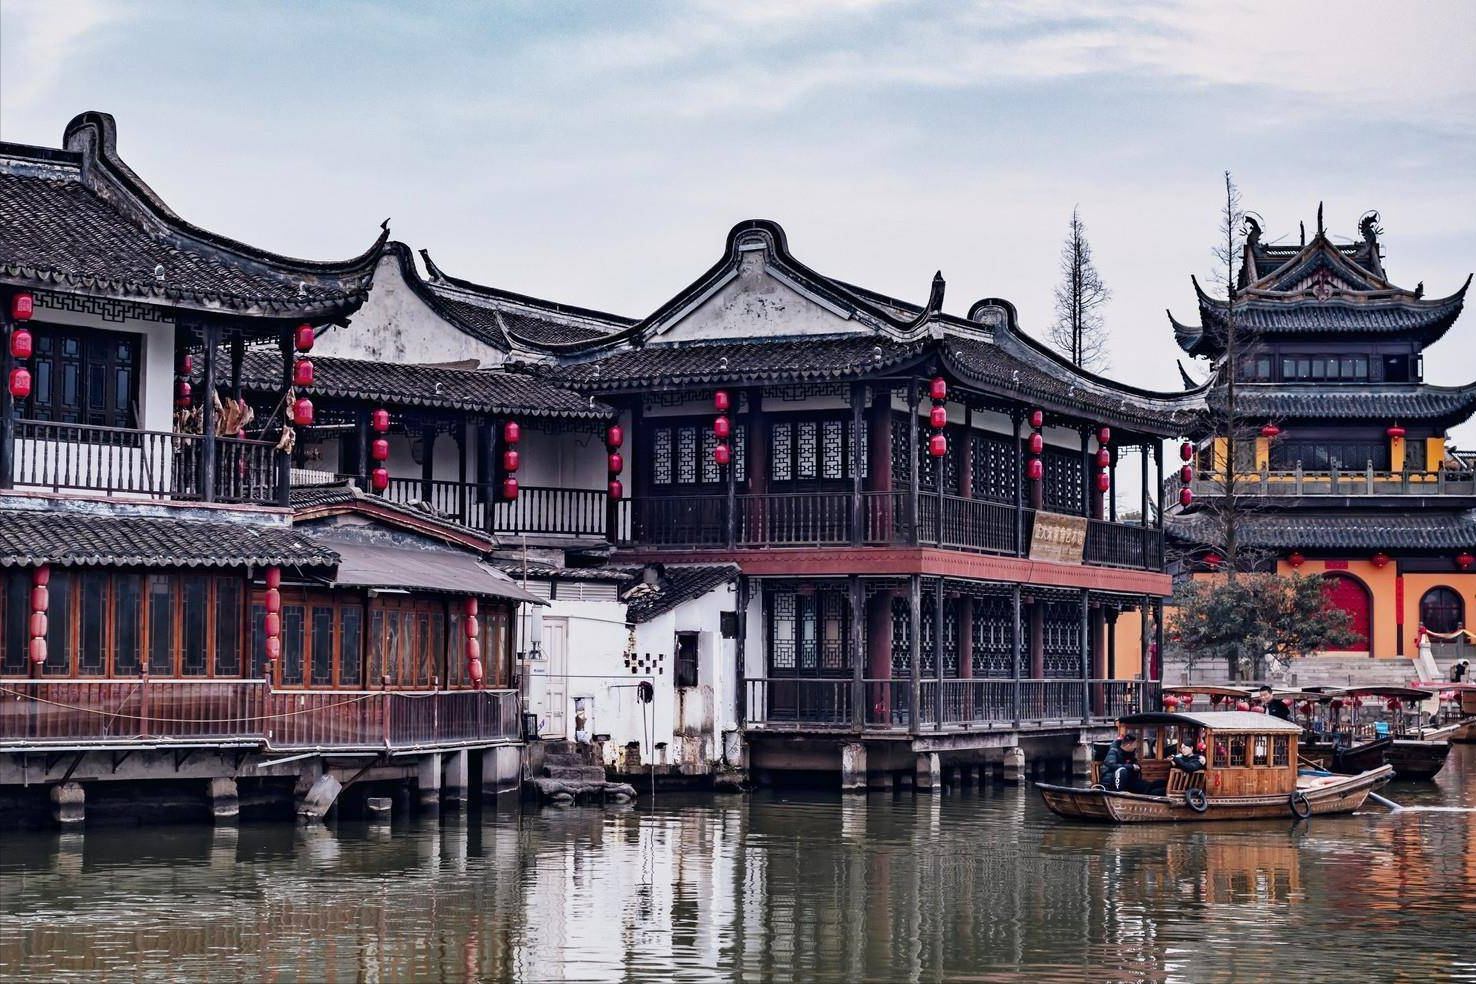 上海保存最完整的江南水乡古镇,位于青浦,依山傍湖,但不是金泽